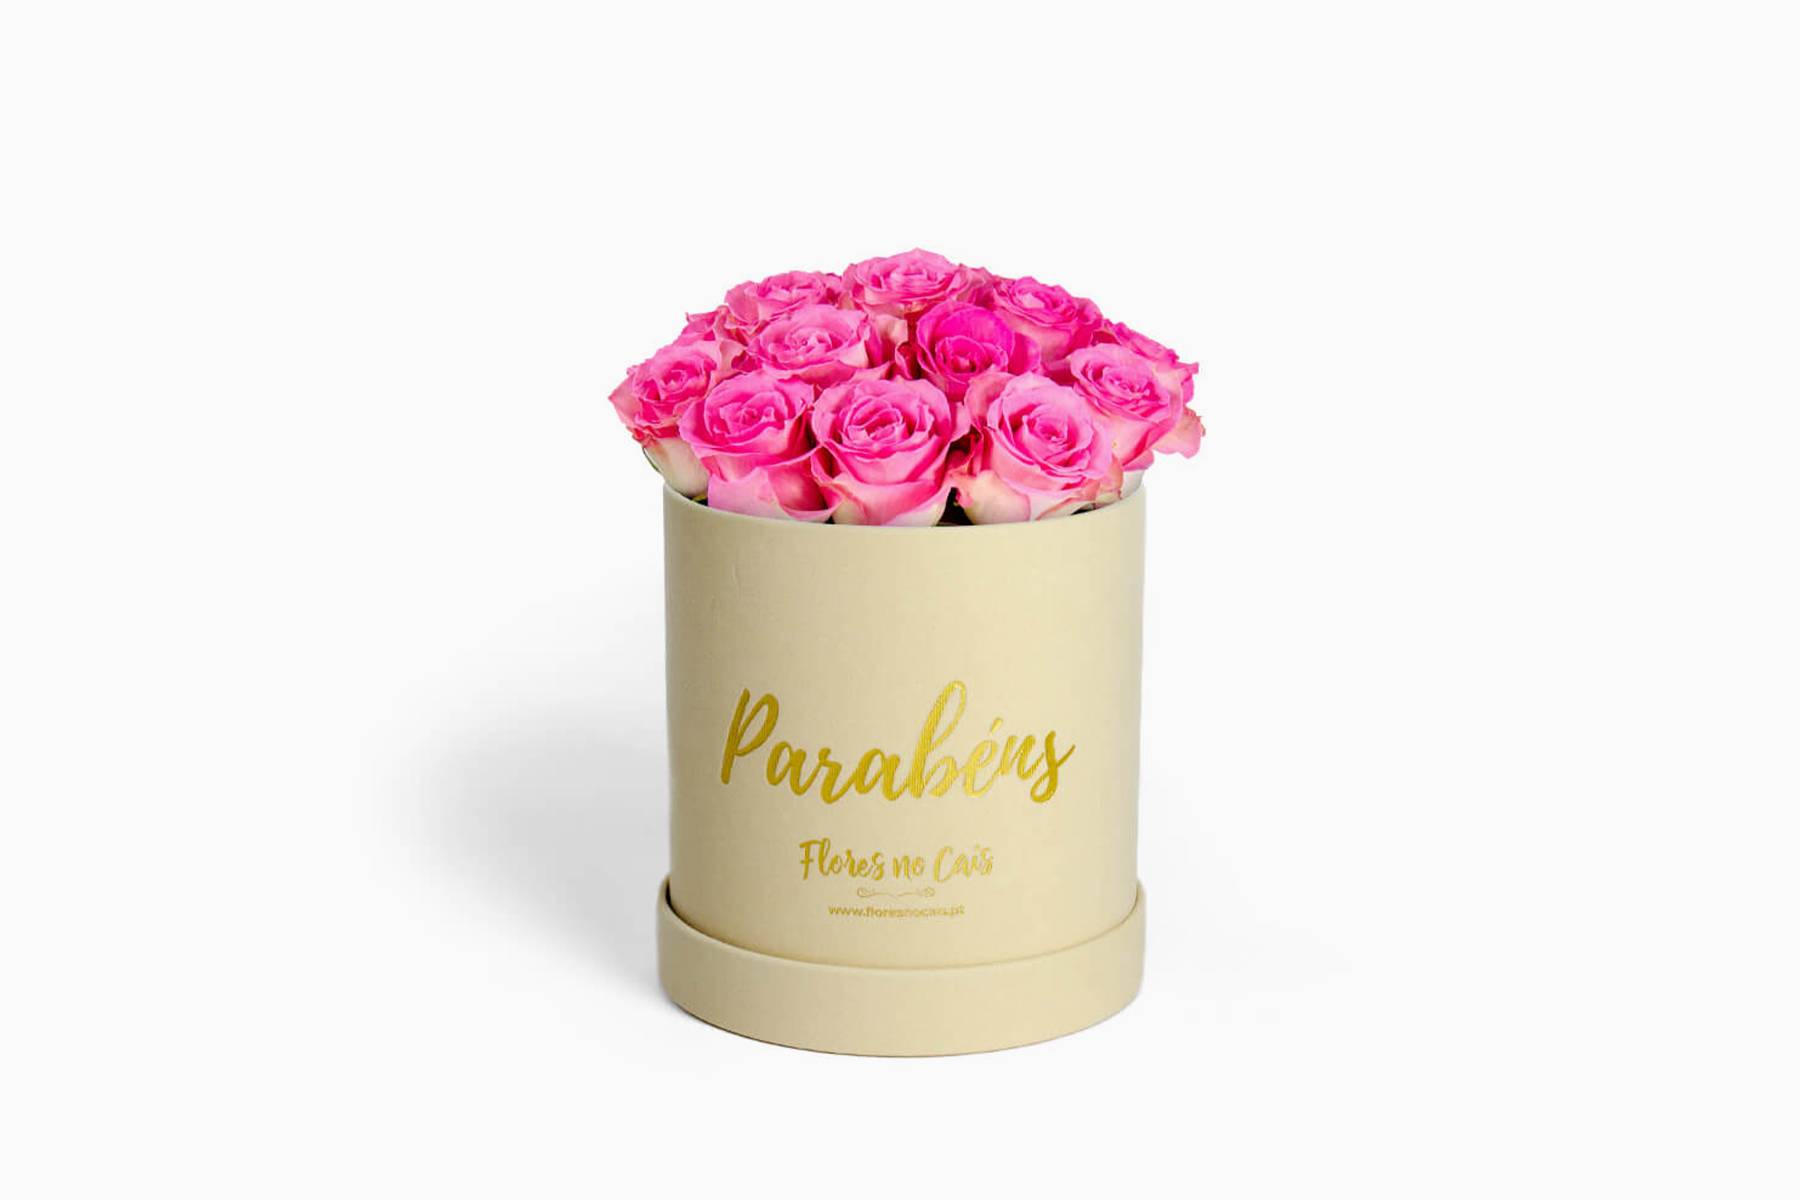 Caixa de Flores ‘Parabéns’ (Rosas Cor-de-Rosa)